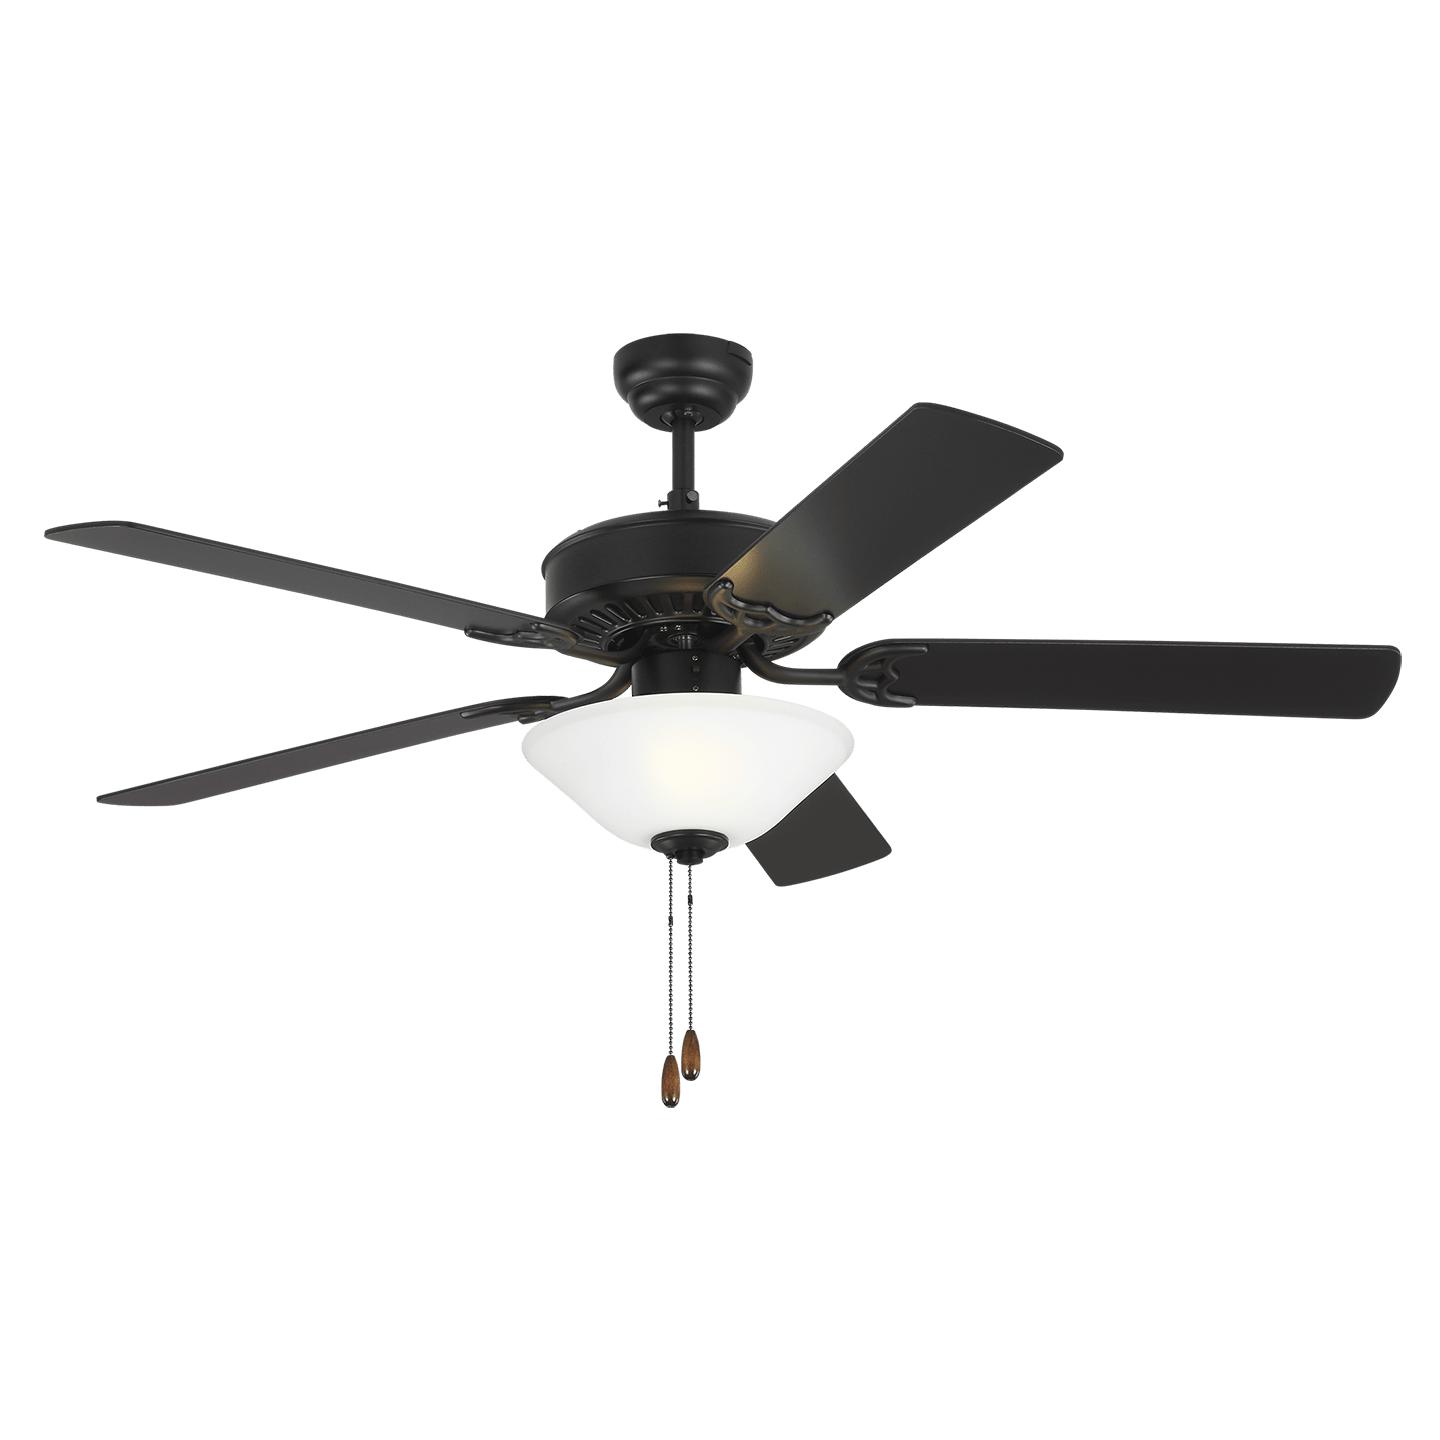 Купить Потолочный вентилятор Haven 52" LED 2 Ceiling Fan в интернет-магазине roooms.ru